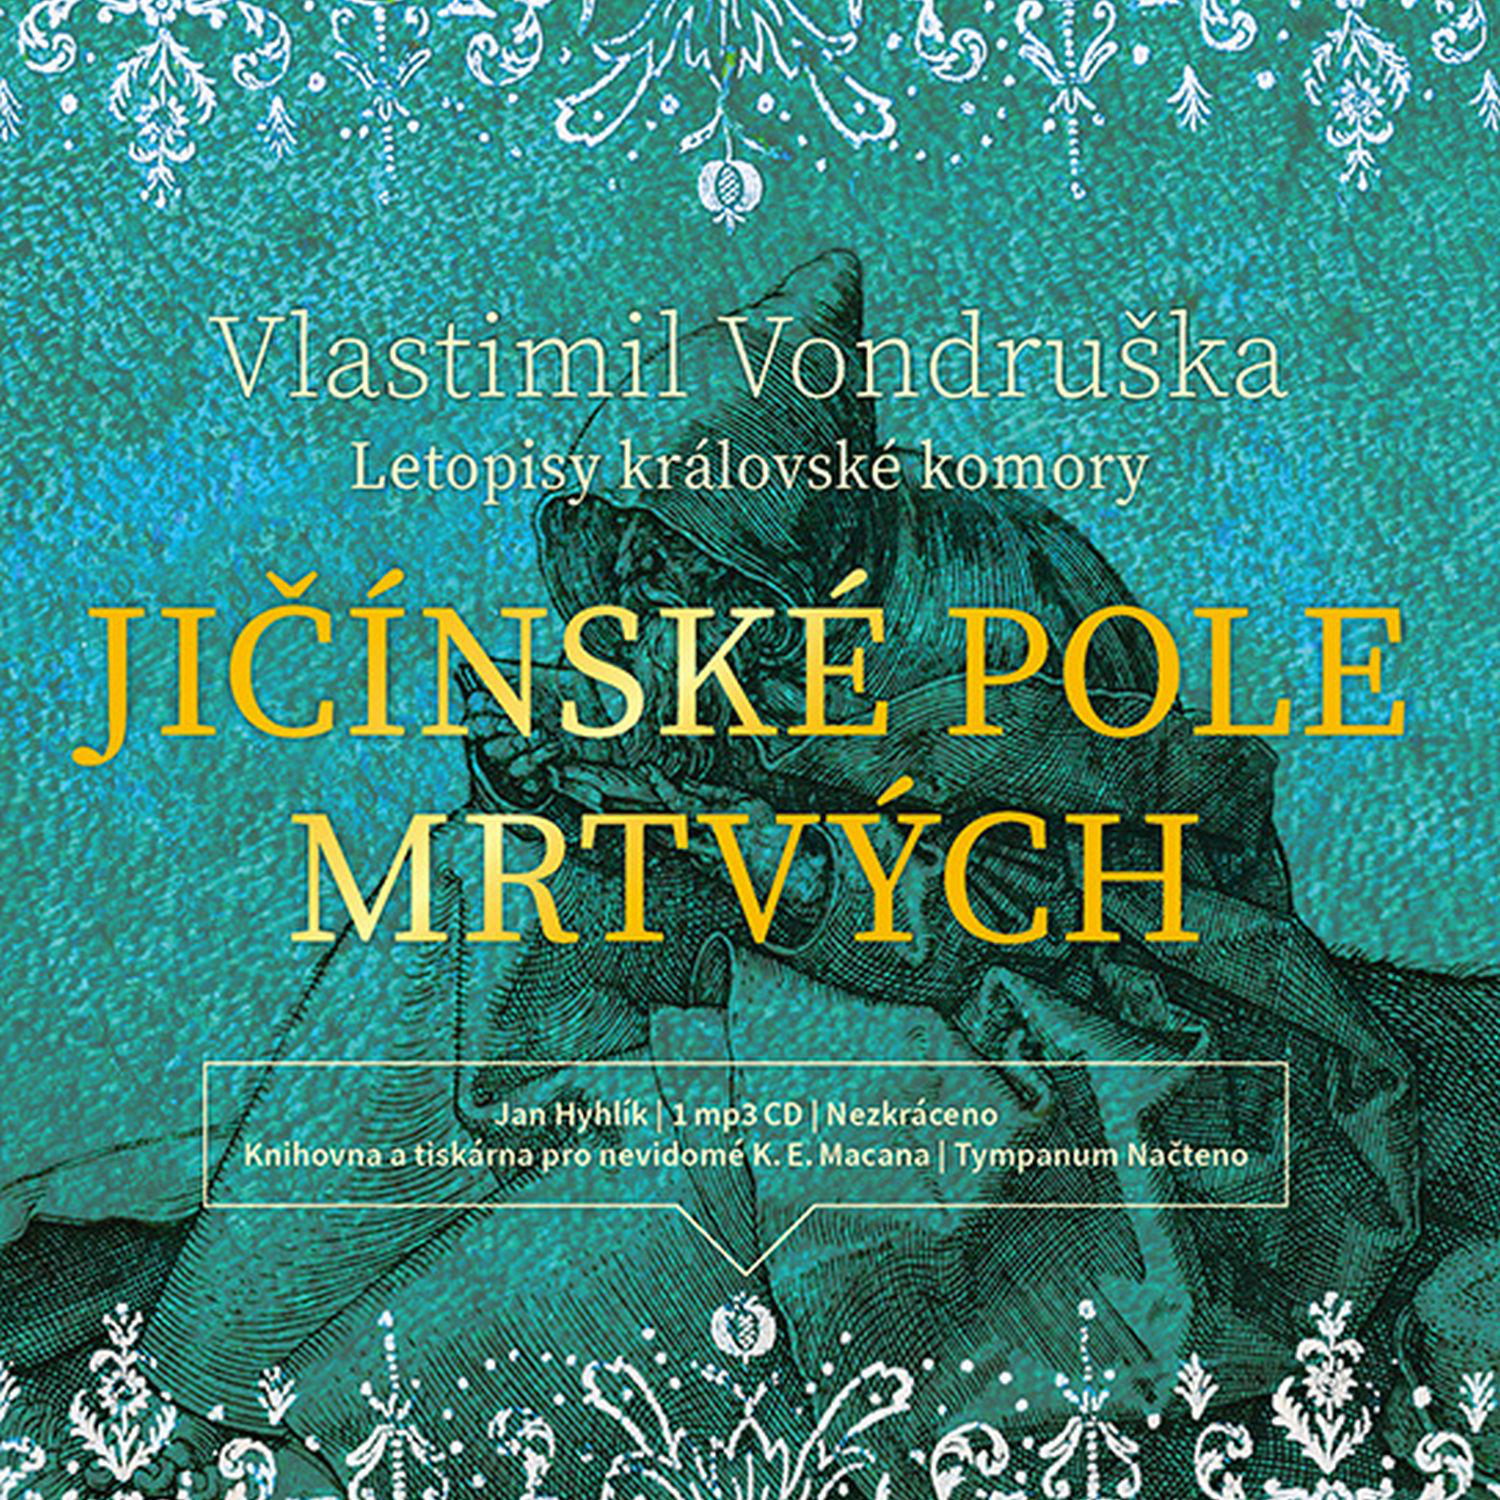 CD Shop - HYHLIK JAN VONDRUSKA: JICINSKE POLE MRTVYCH - LETOPISY KRALOVSKE KOMORY (MP3-CD)